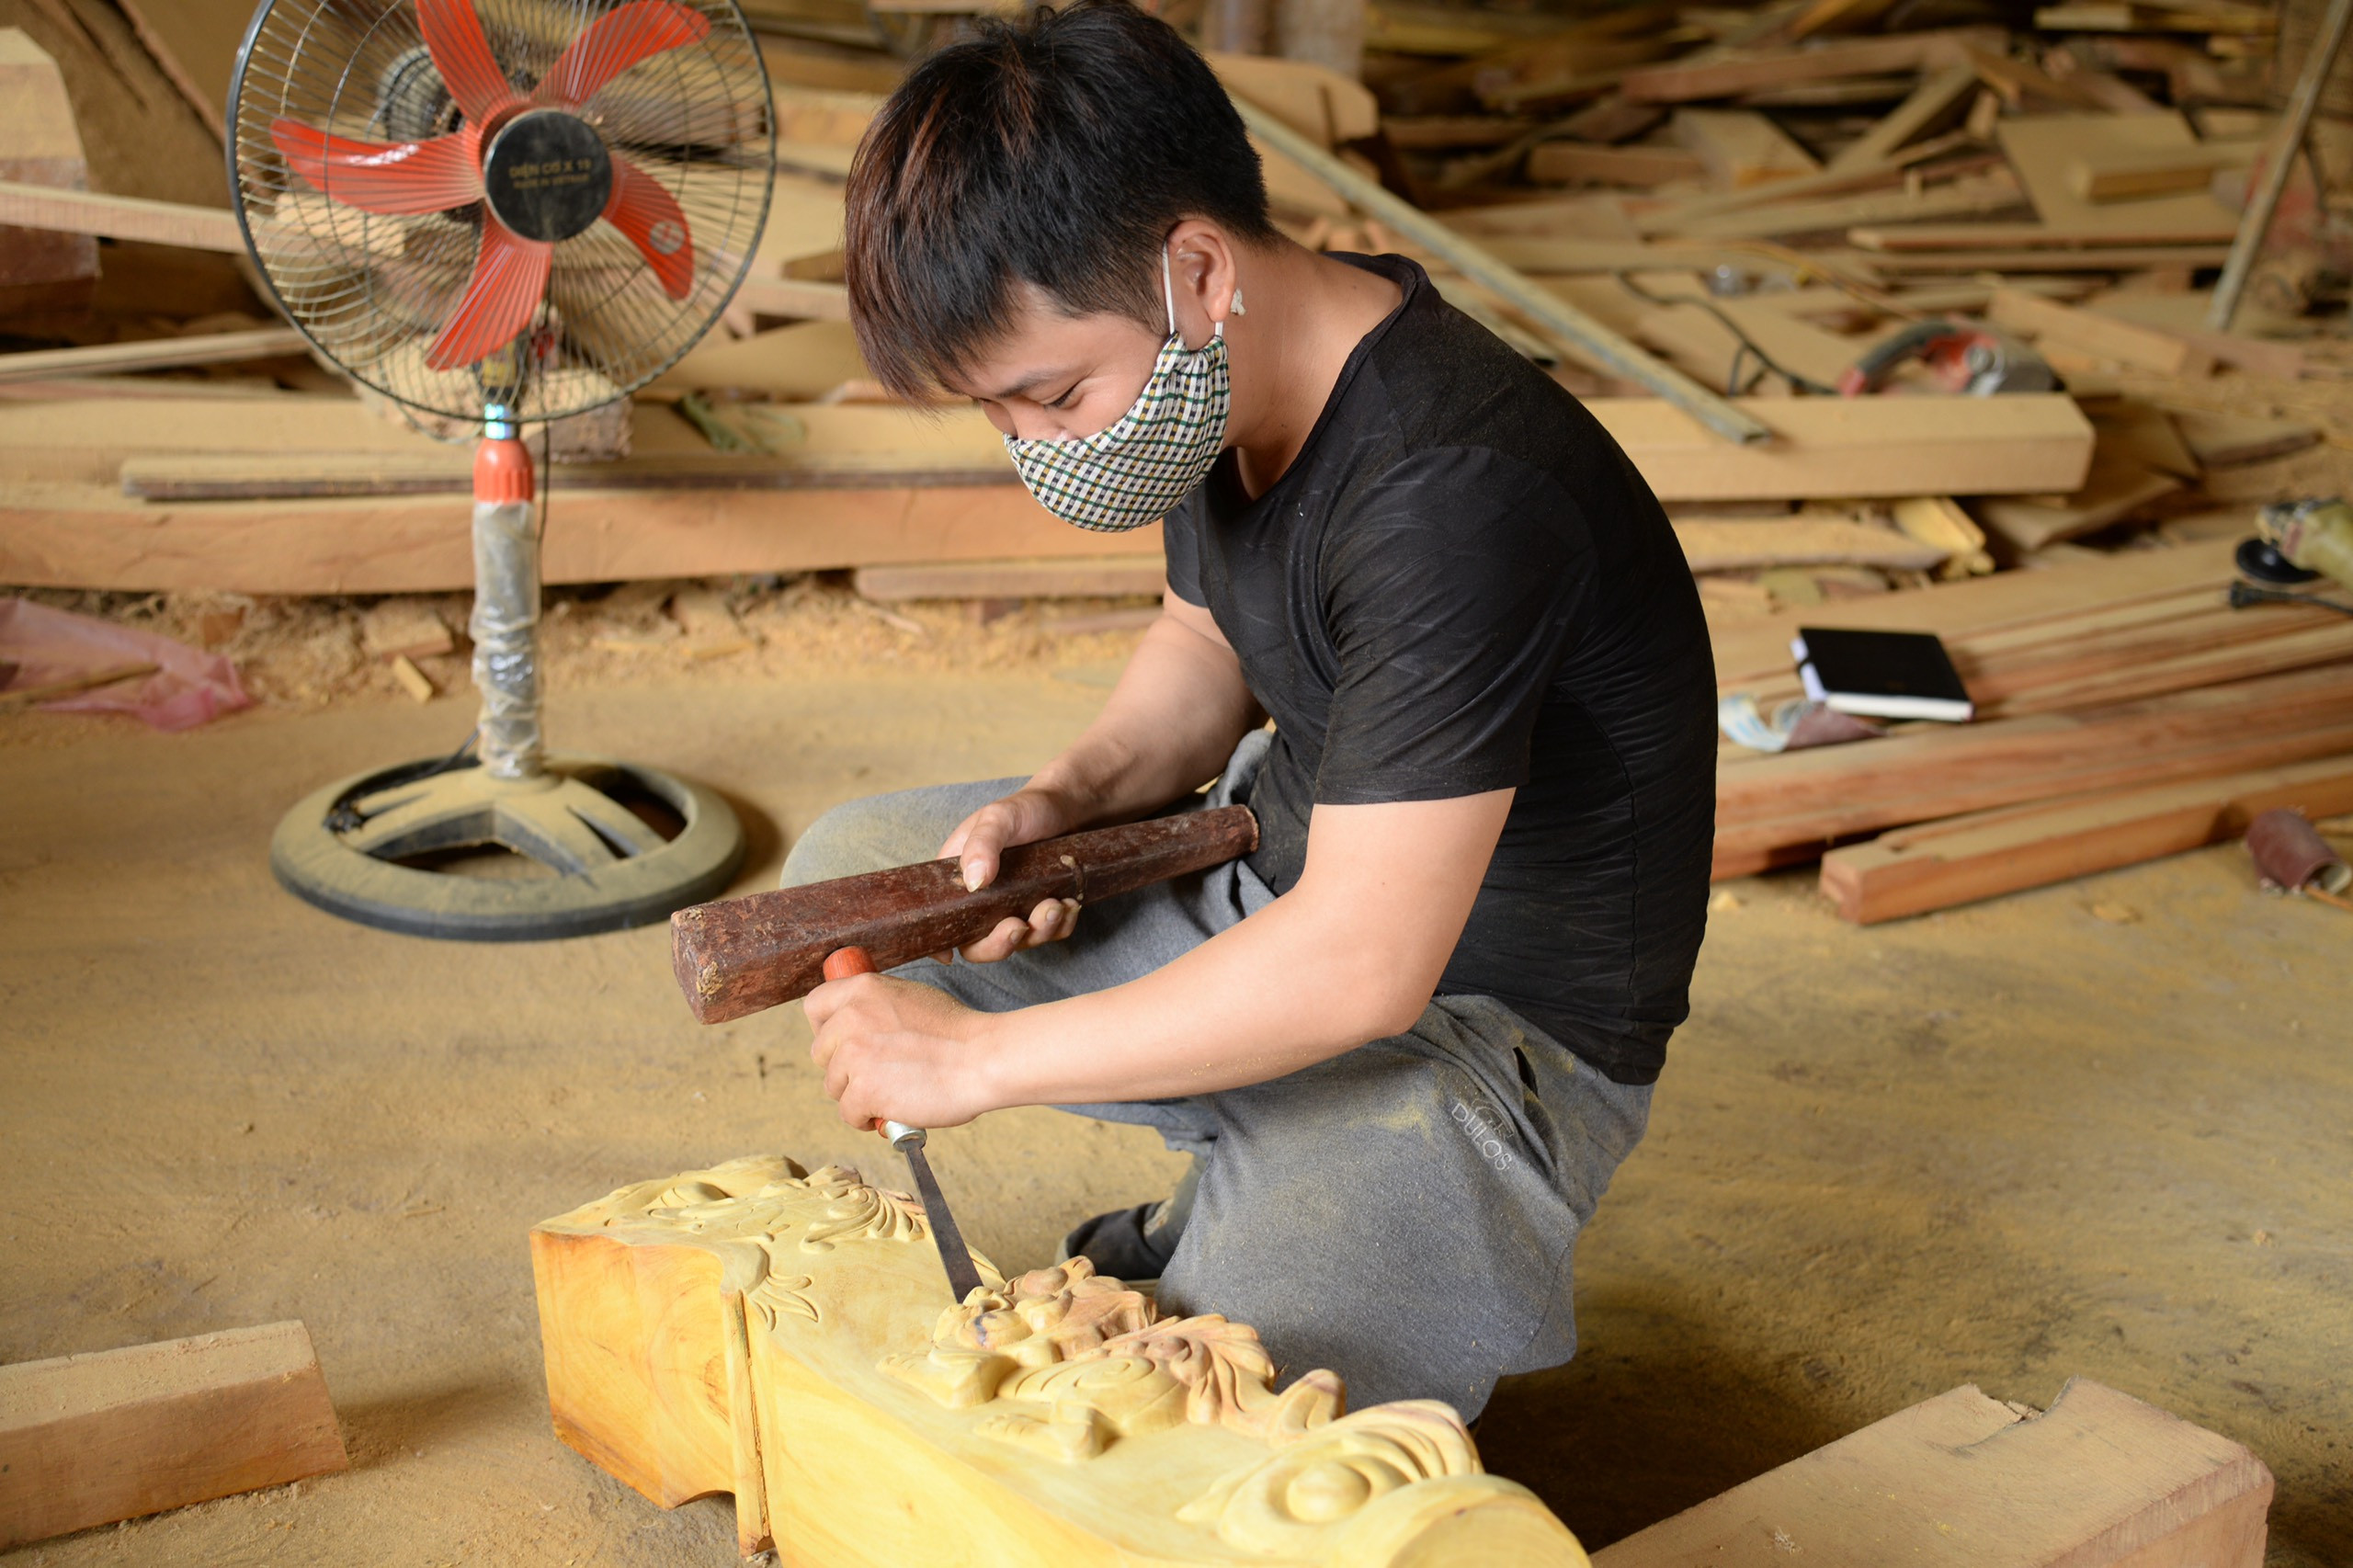 Đội thợ mộc chuyên dựng nhà từ gỗ mít, mỗi căn trị giá hàng tỷ đồng - Ảnh 8.